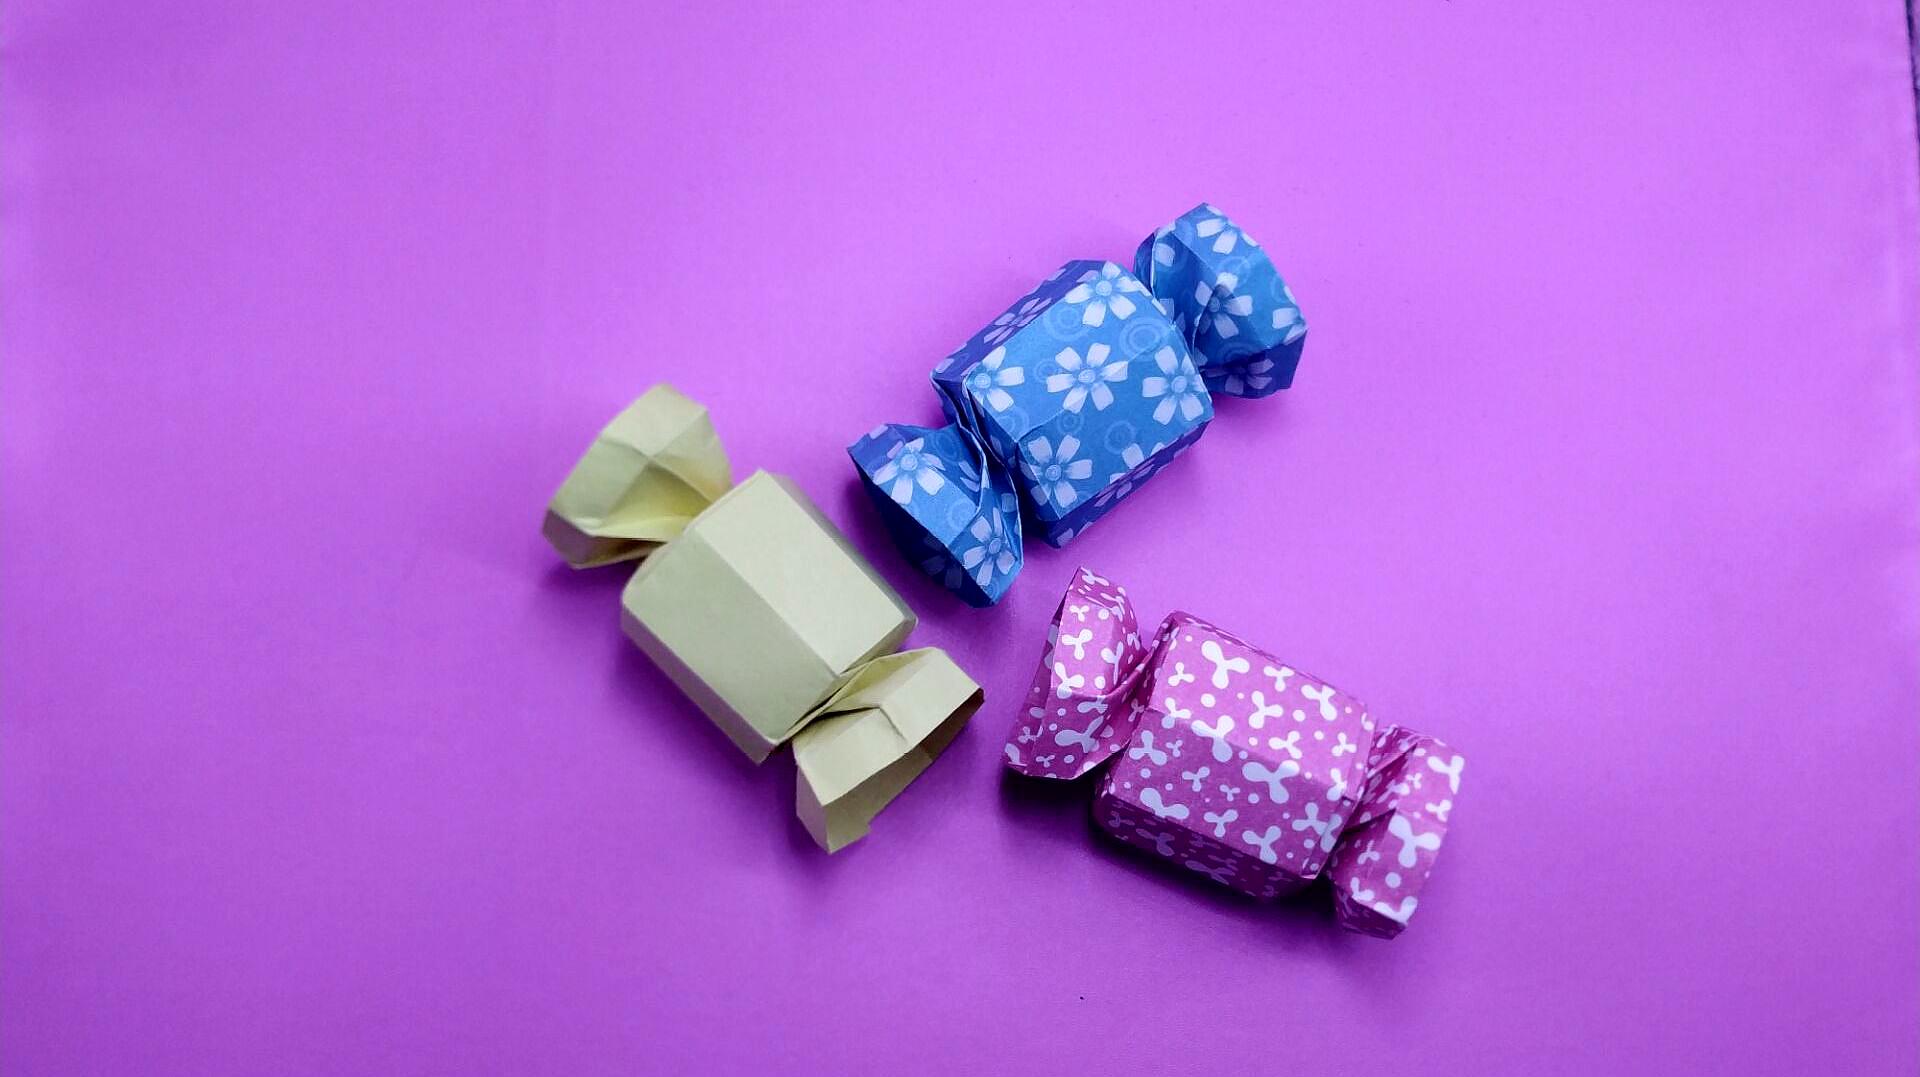 漂亮的糖果礼物盒折纸教程,放上小礼物,朋友看到喜欢的不得了